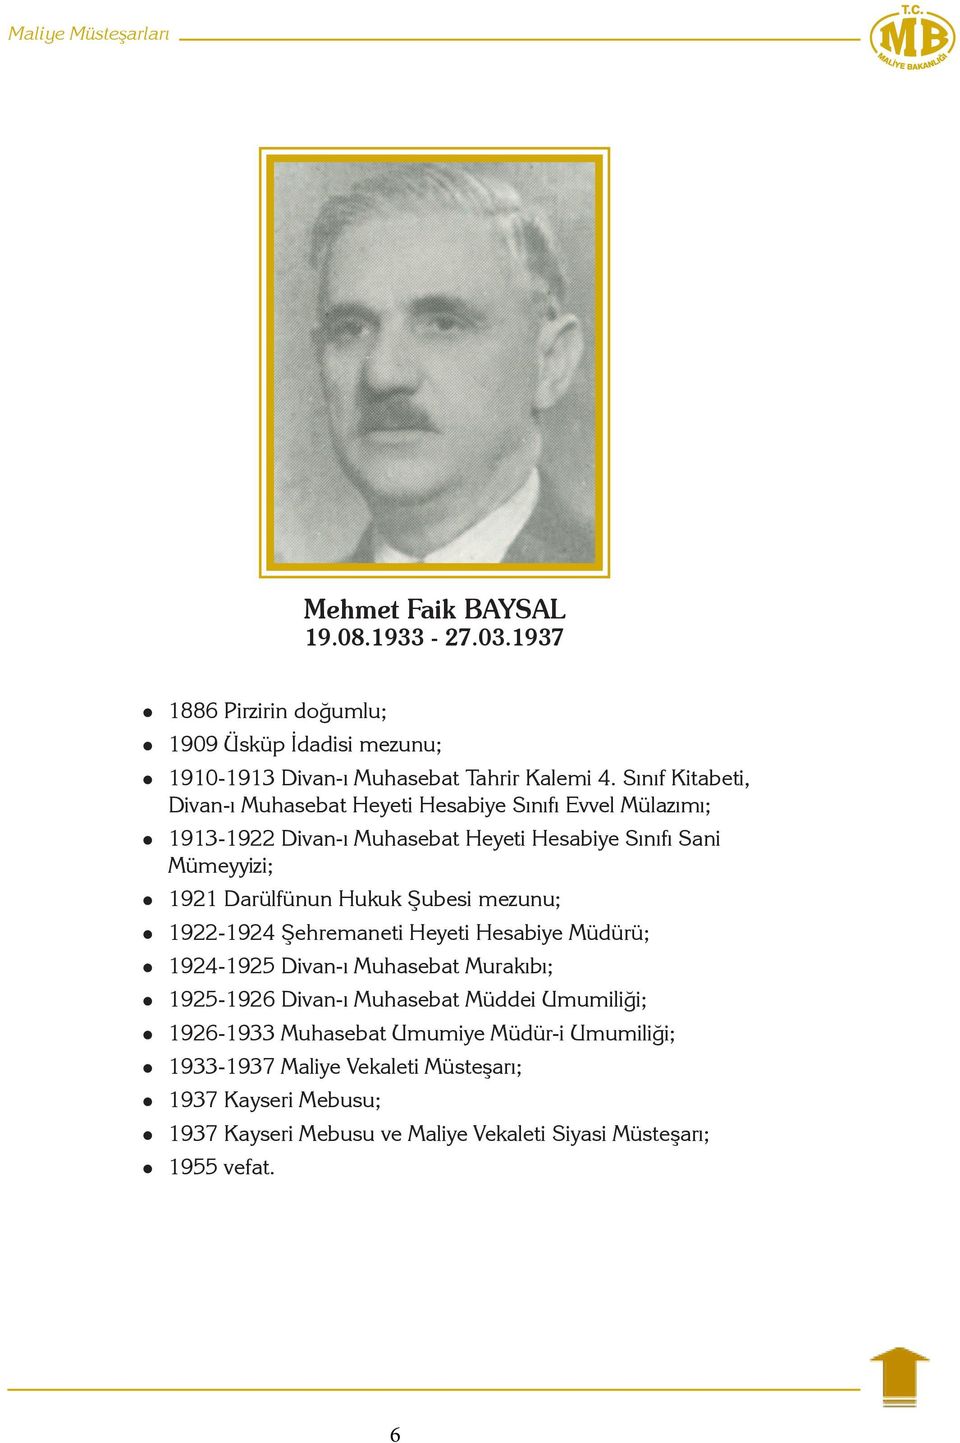 Hukuk Şubesi mezunu; 1922-1924 Şehremaneti Heyeti Hesabiye Müdürü; 1924-1925 Divan-ı Muhasebat Murakıbı; 1925-1926 Divan-ı Muhasebat Müddei Umumiliği;